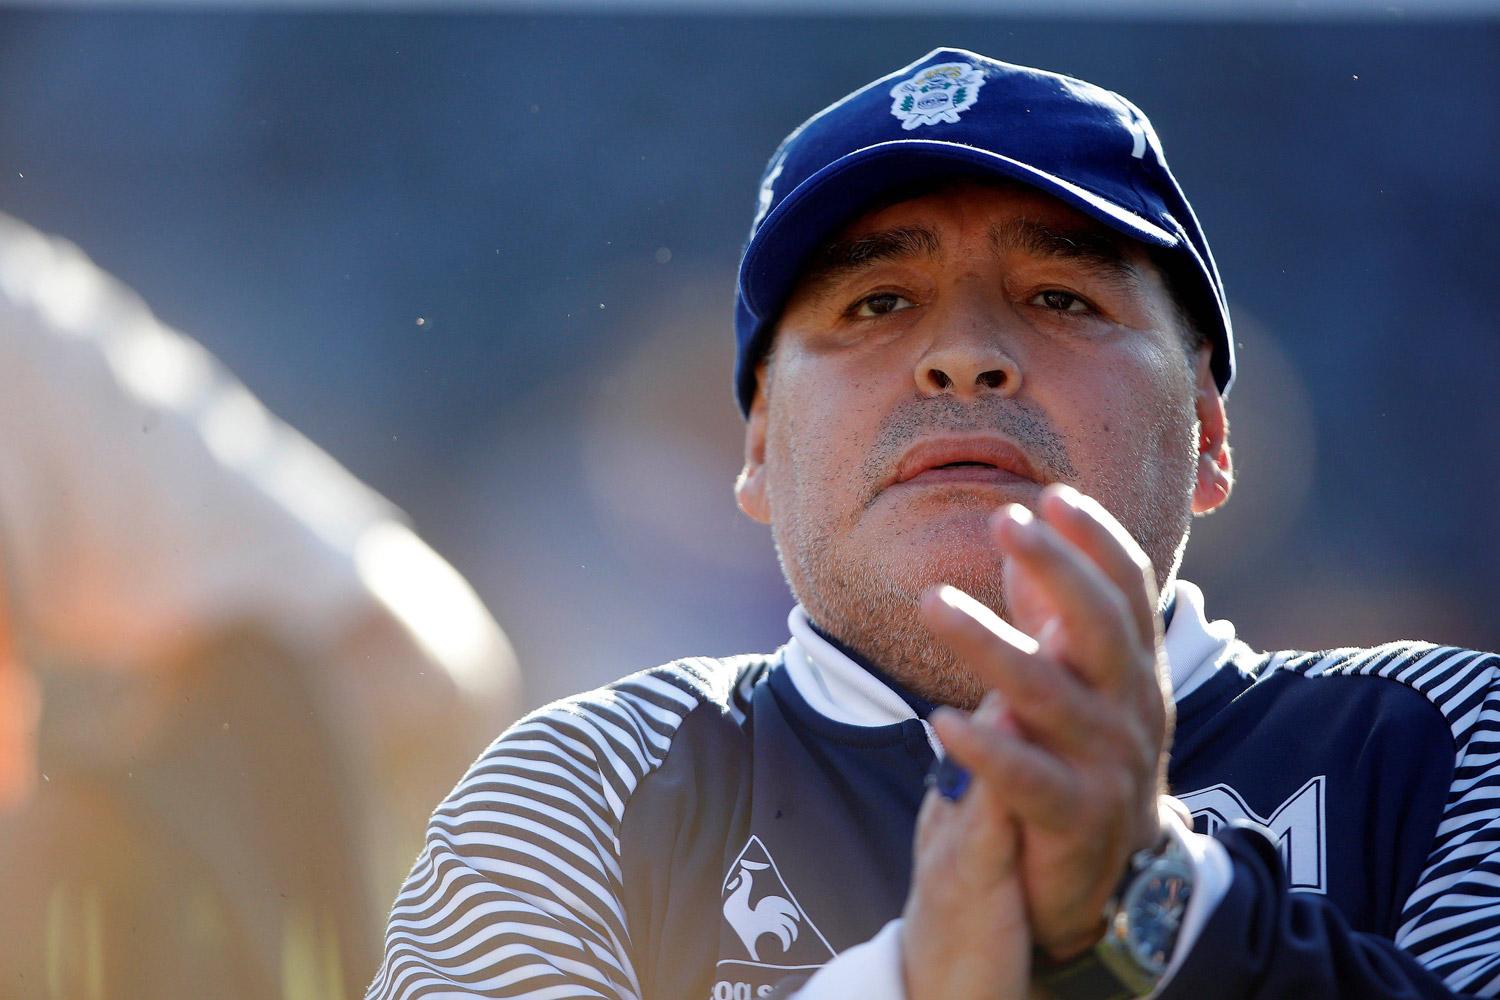 Cái chết của Diego Maradona: 8 nhân viên y tế bị buộc tội mưu sát
